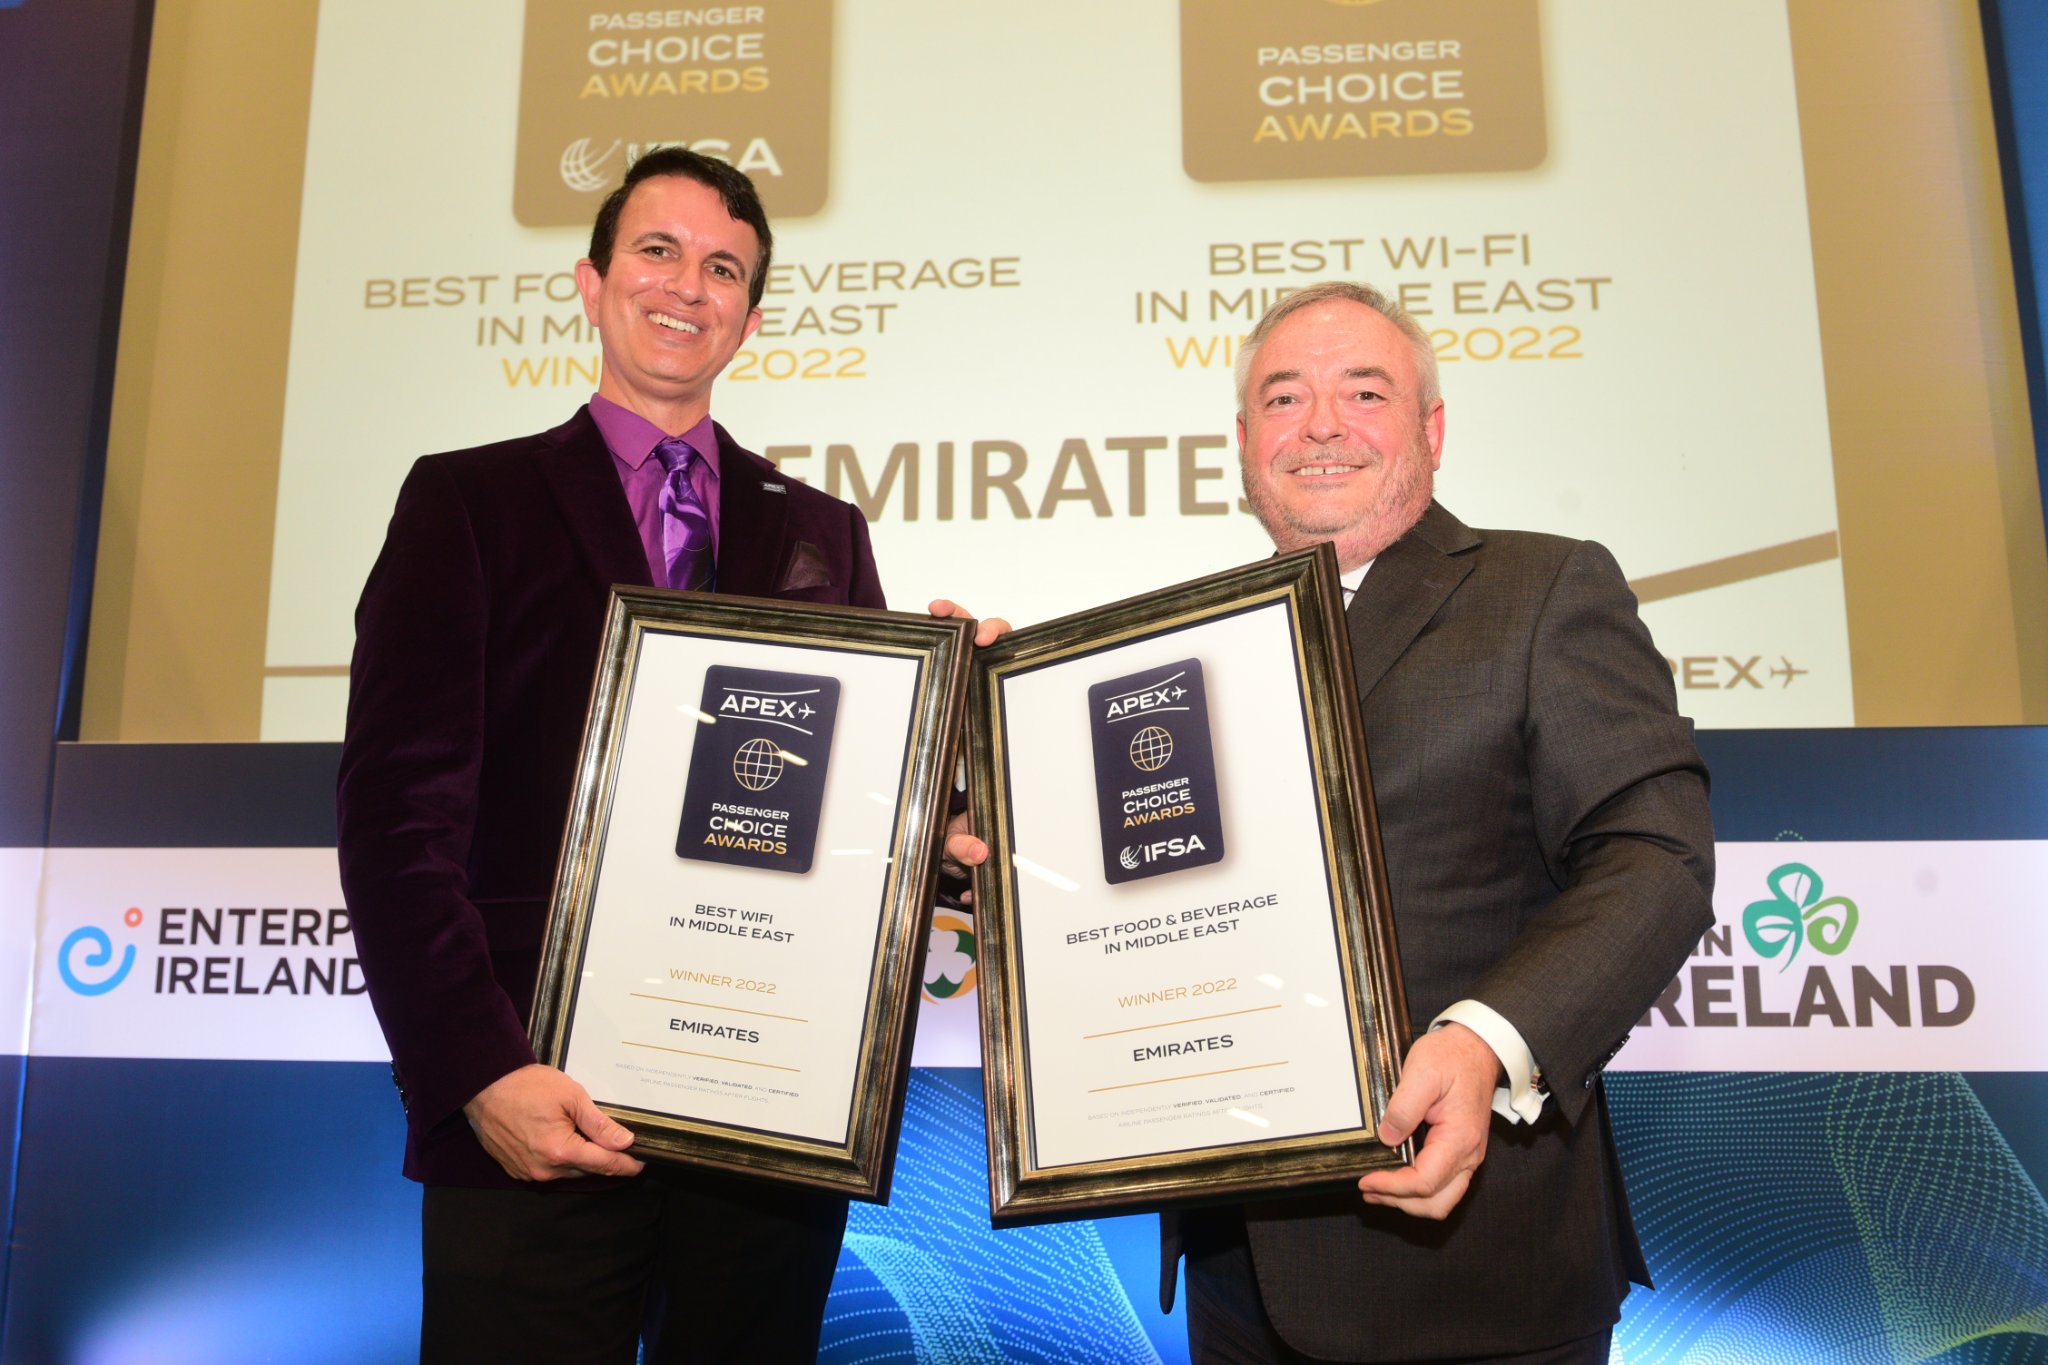 エミレーツ航空 Apex 22 Regional Passenger Choice Awards 中東部門で Best Wi Fi と Best Food Beverage を受賞 エミレーツ航空のプレスリリース